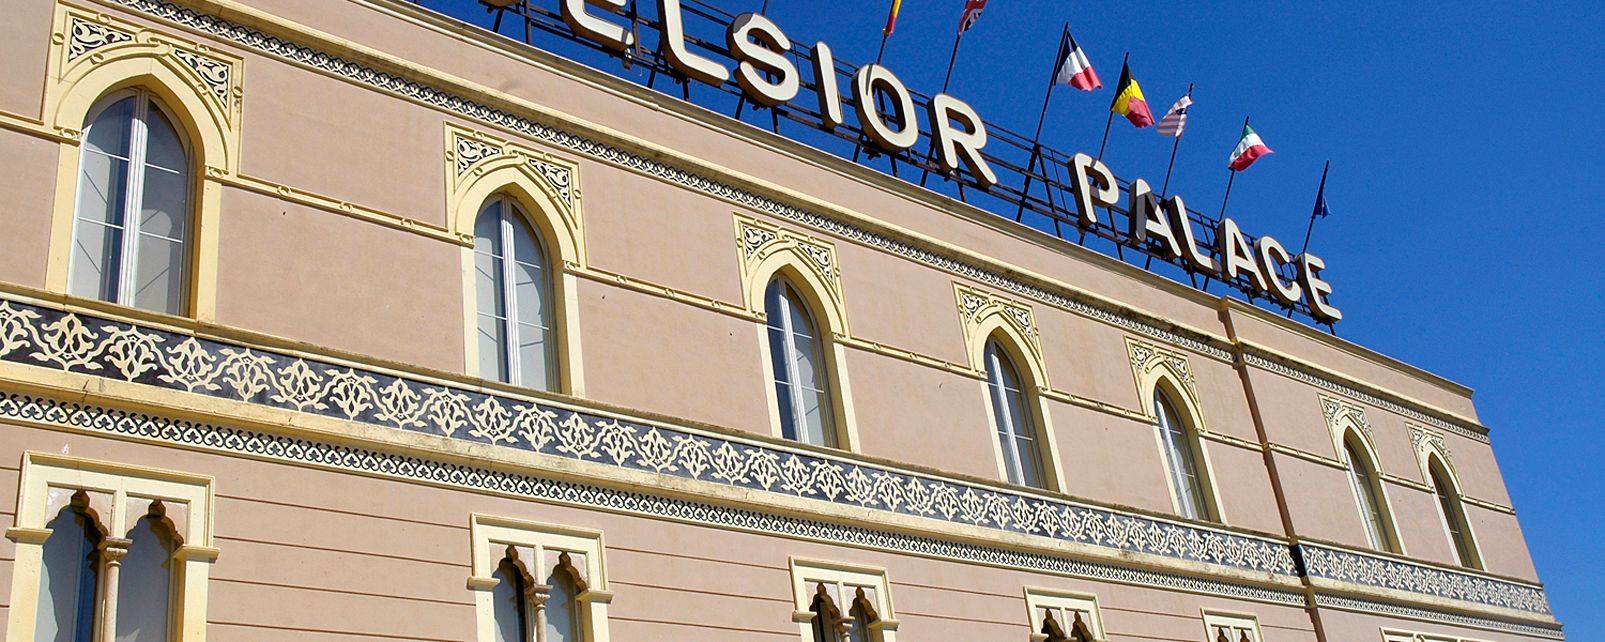 Hôtel Excelsior Palace